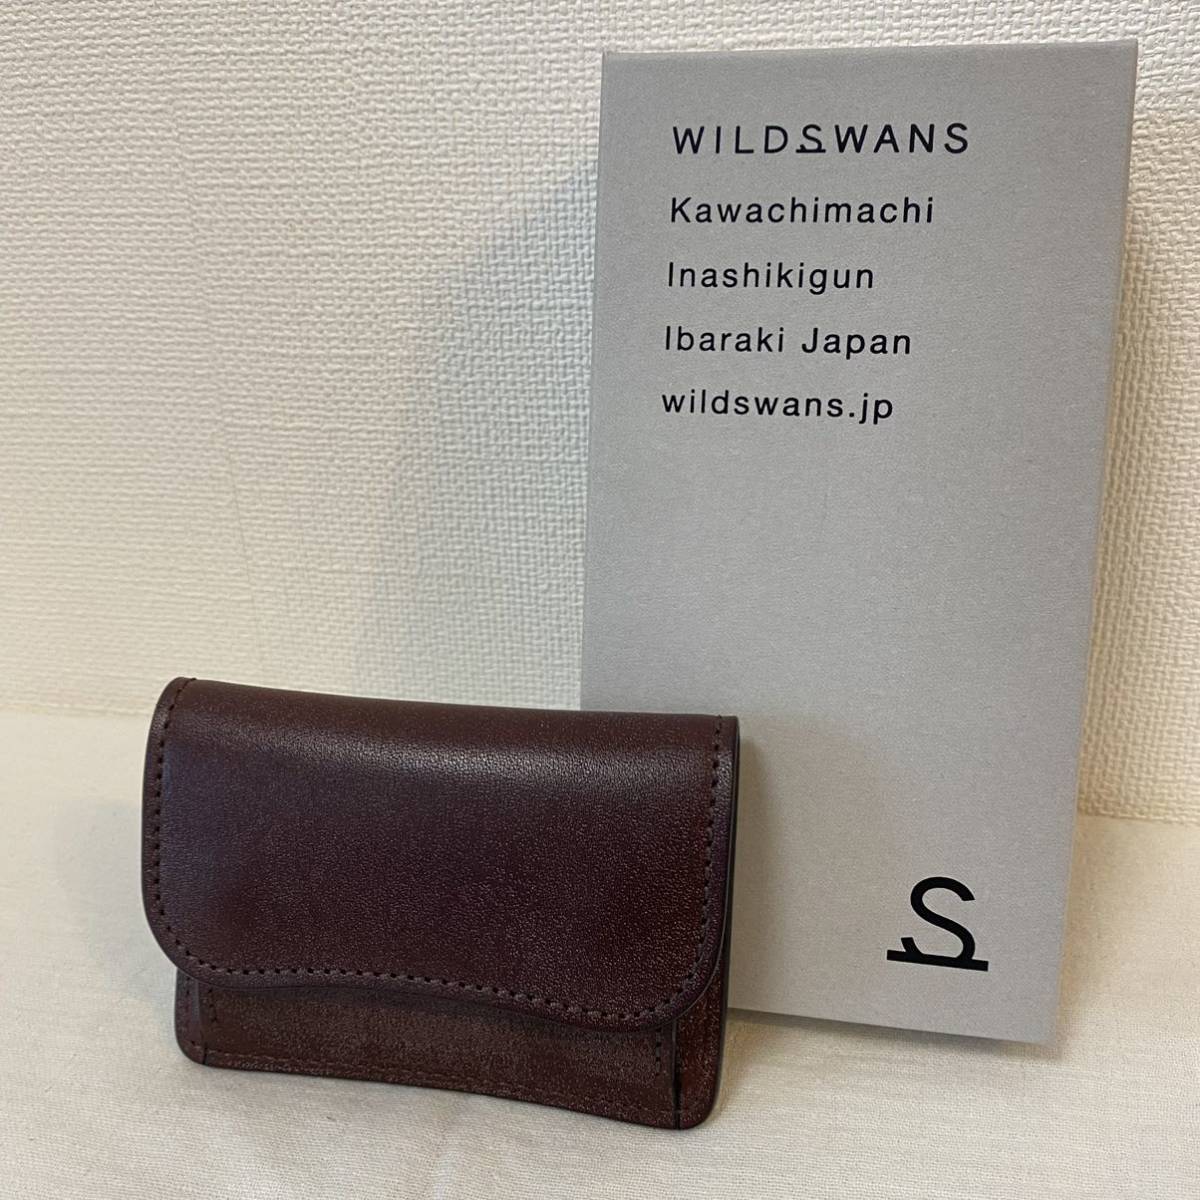 ヤフオク! -「wildswans コインケース」の落札相場・落札価格